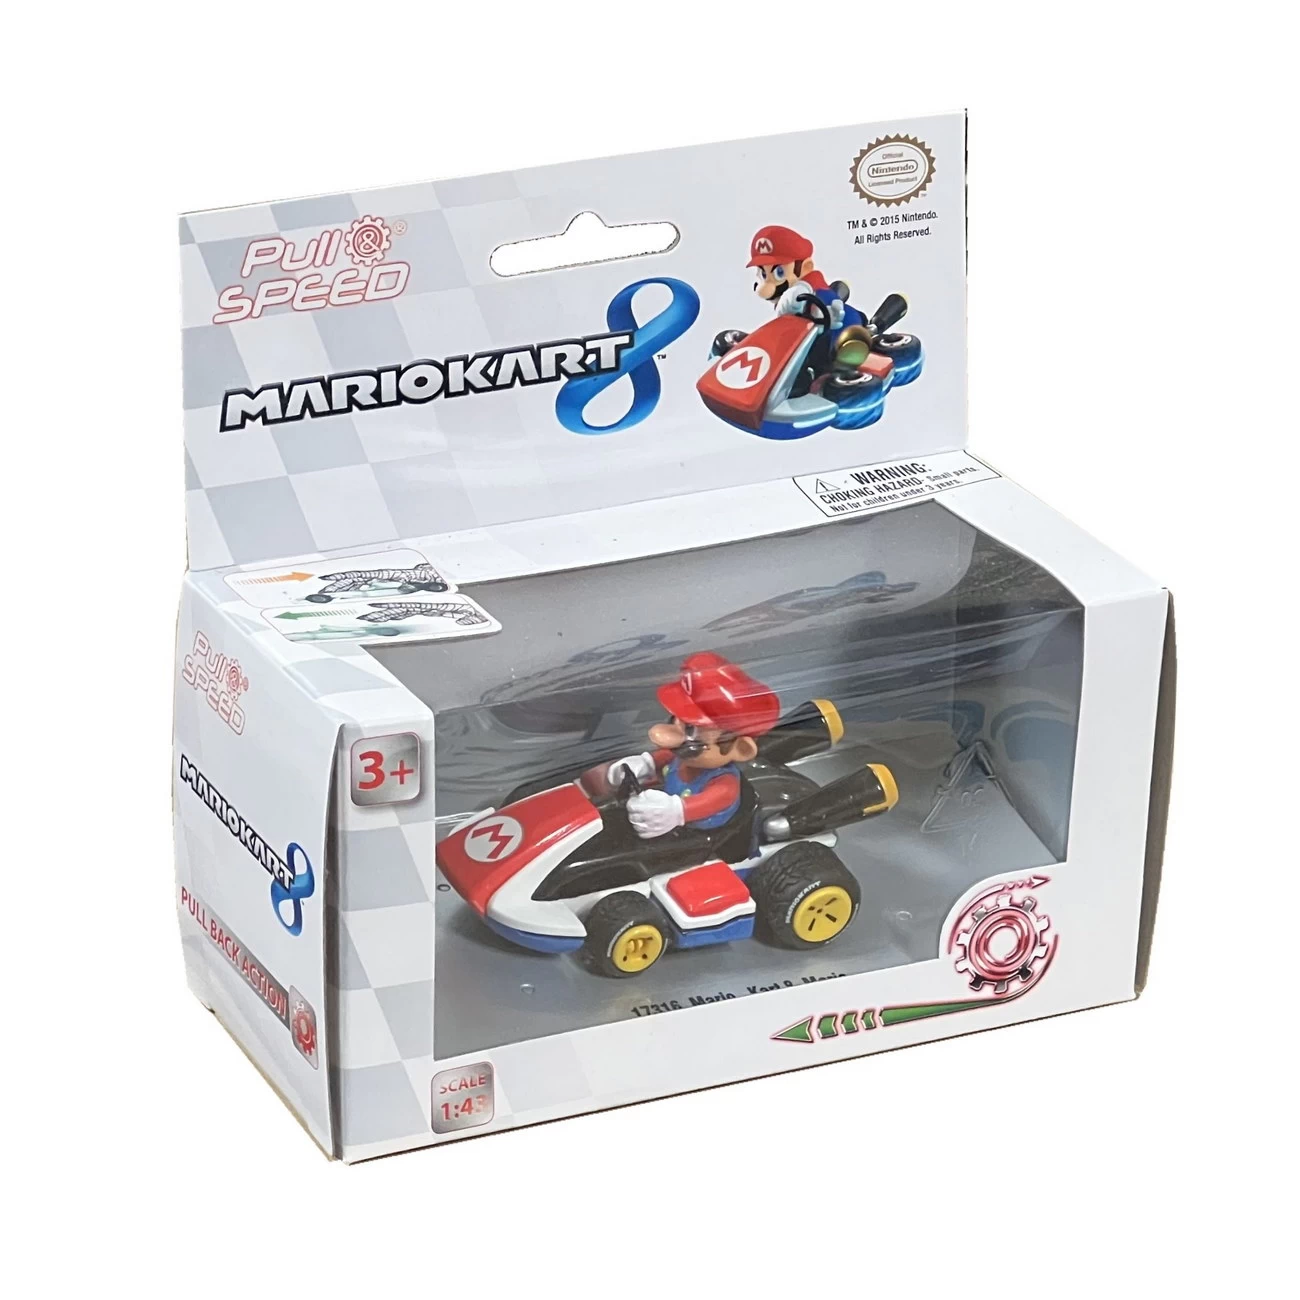 Pull & Speed - Mario - MarioKart 8 (17316)